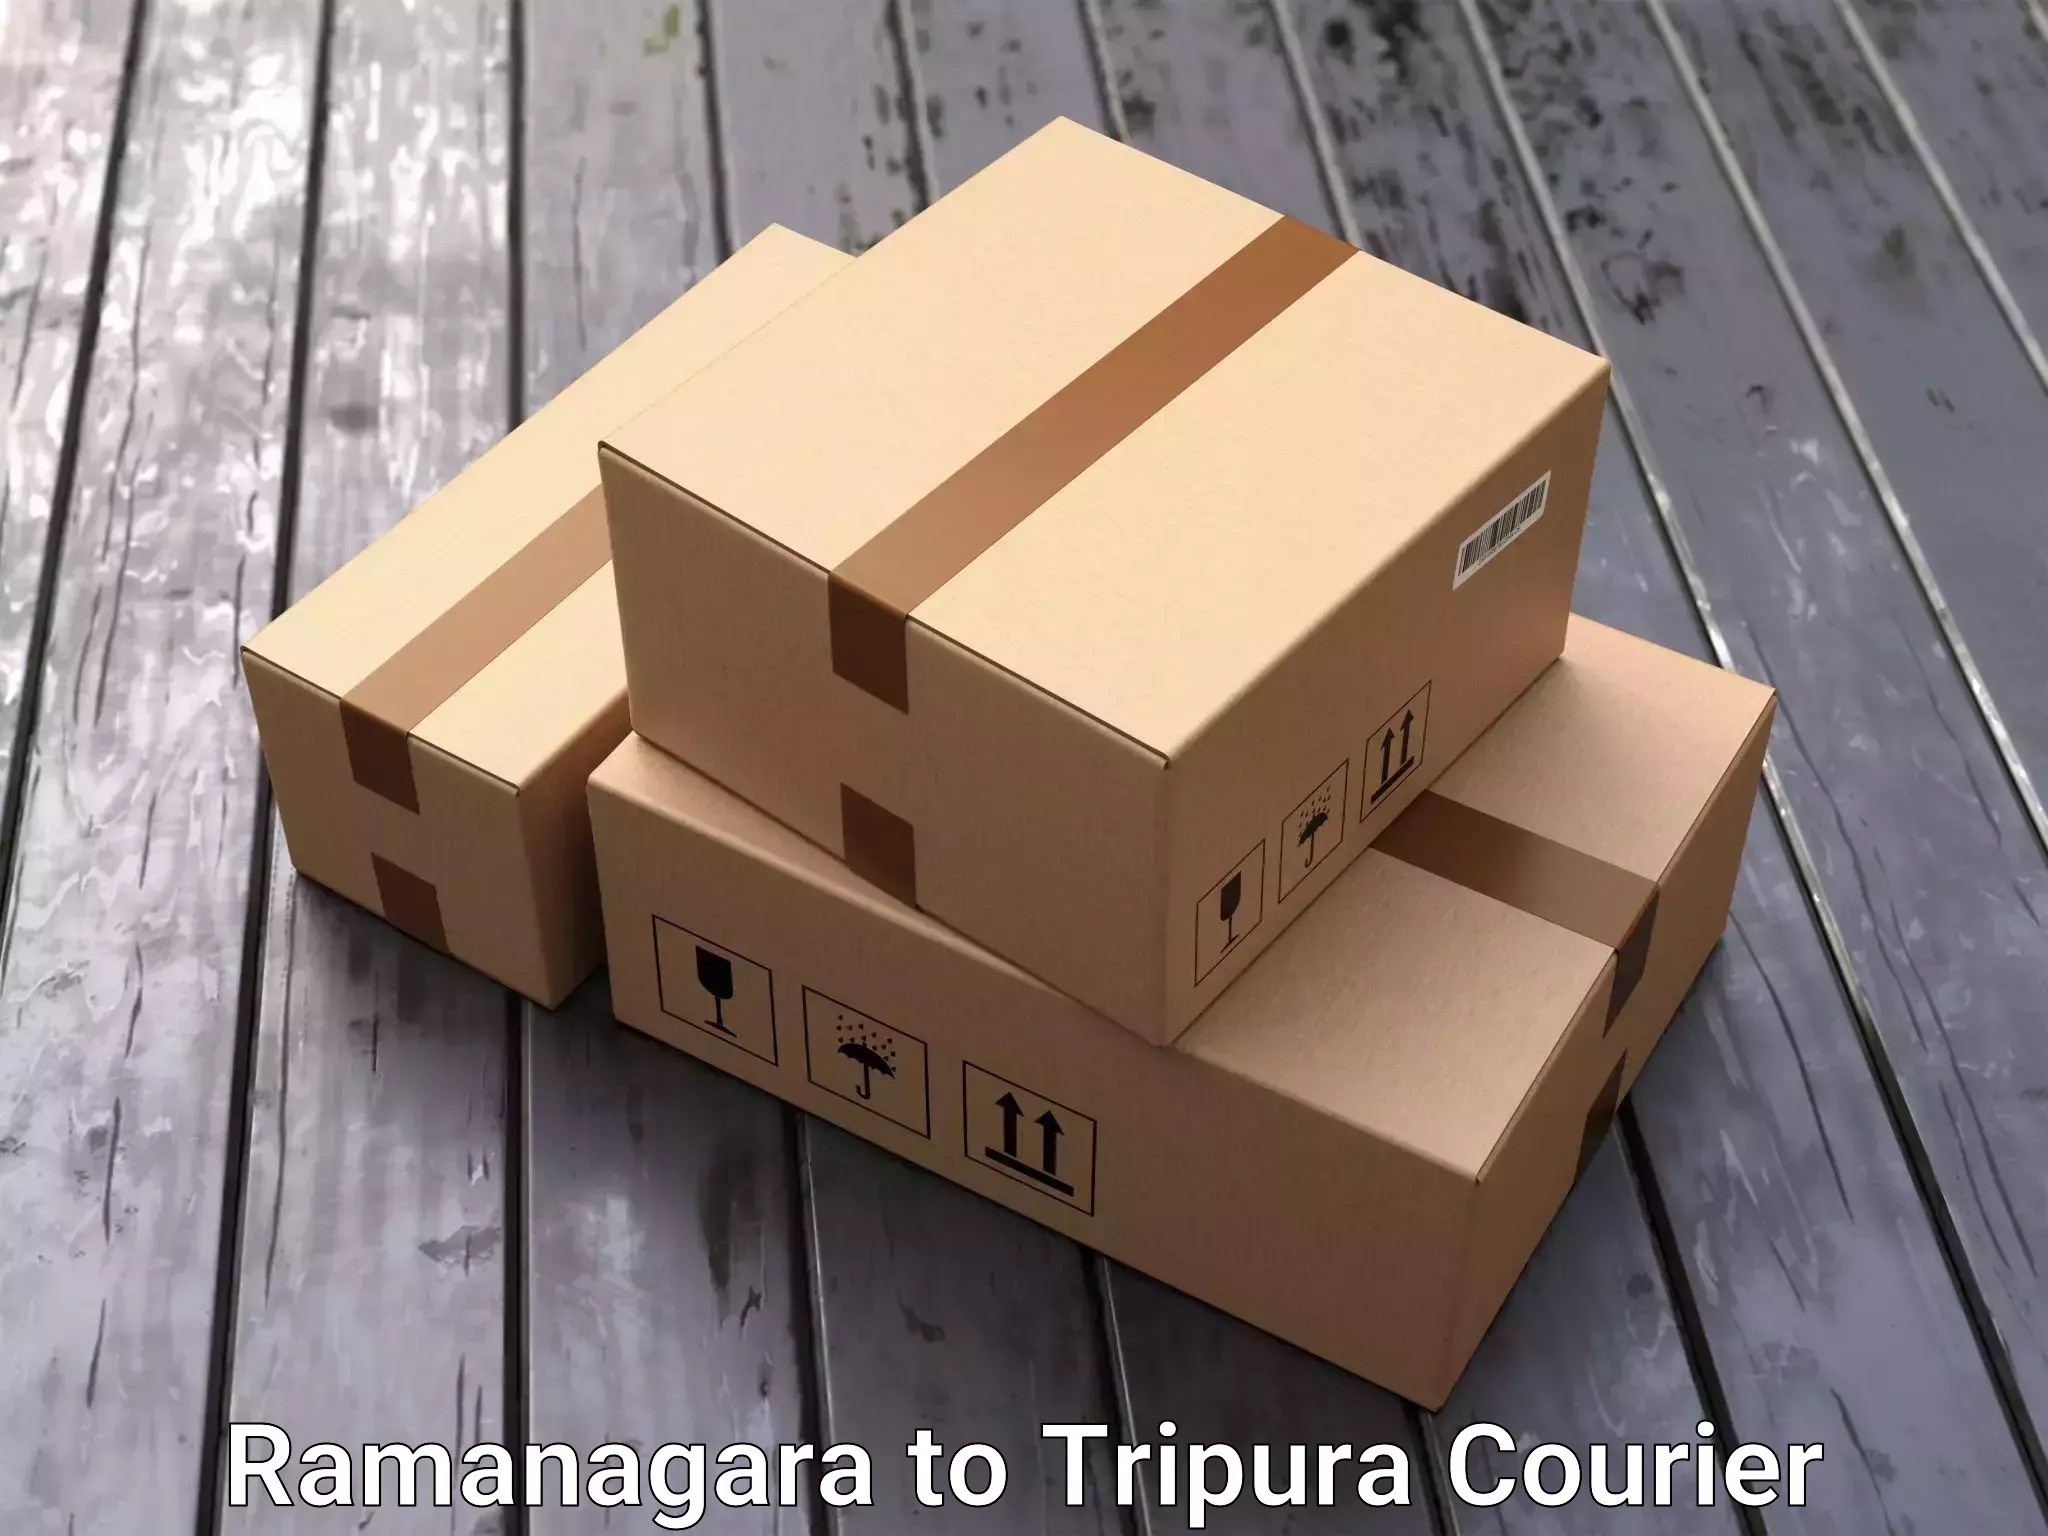 Stress-free furniture moving Ramanagara to Udaipur Tripura